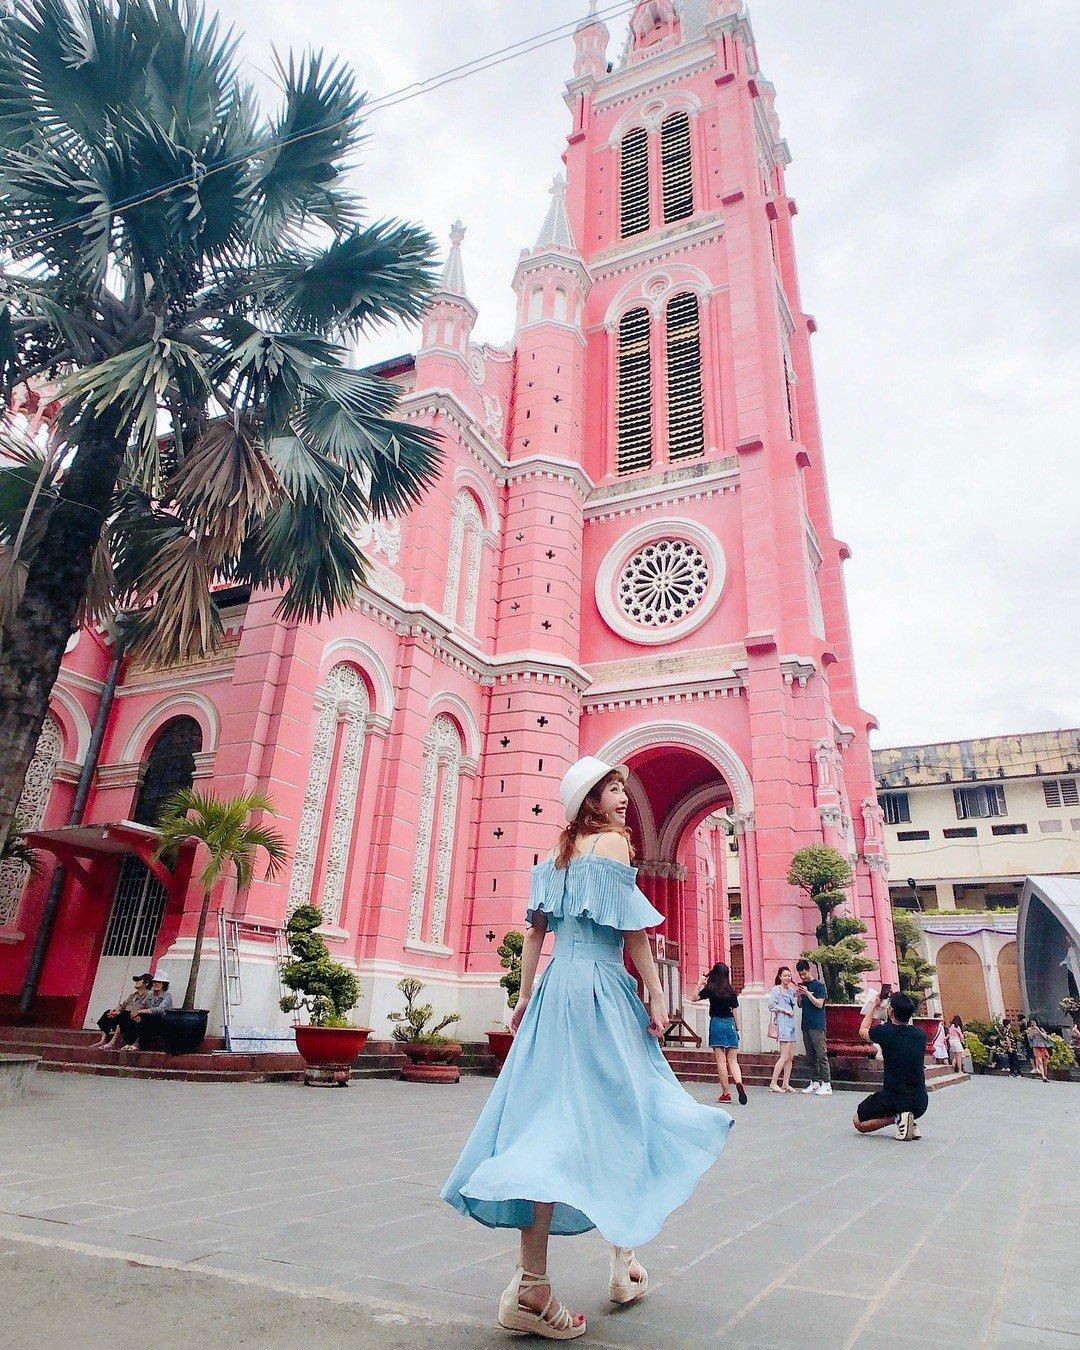 Muôn góc sống ảo tại nhà thờ màu hồng Tân Định. (Ảnh: internet)